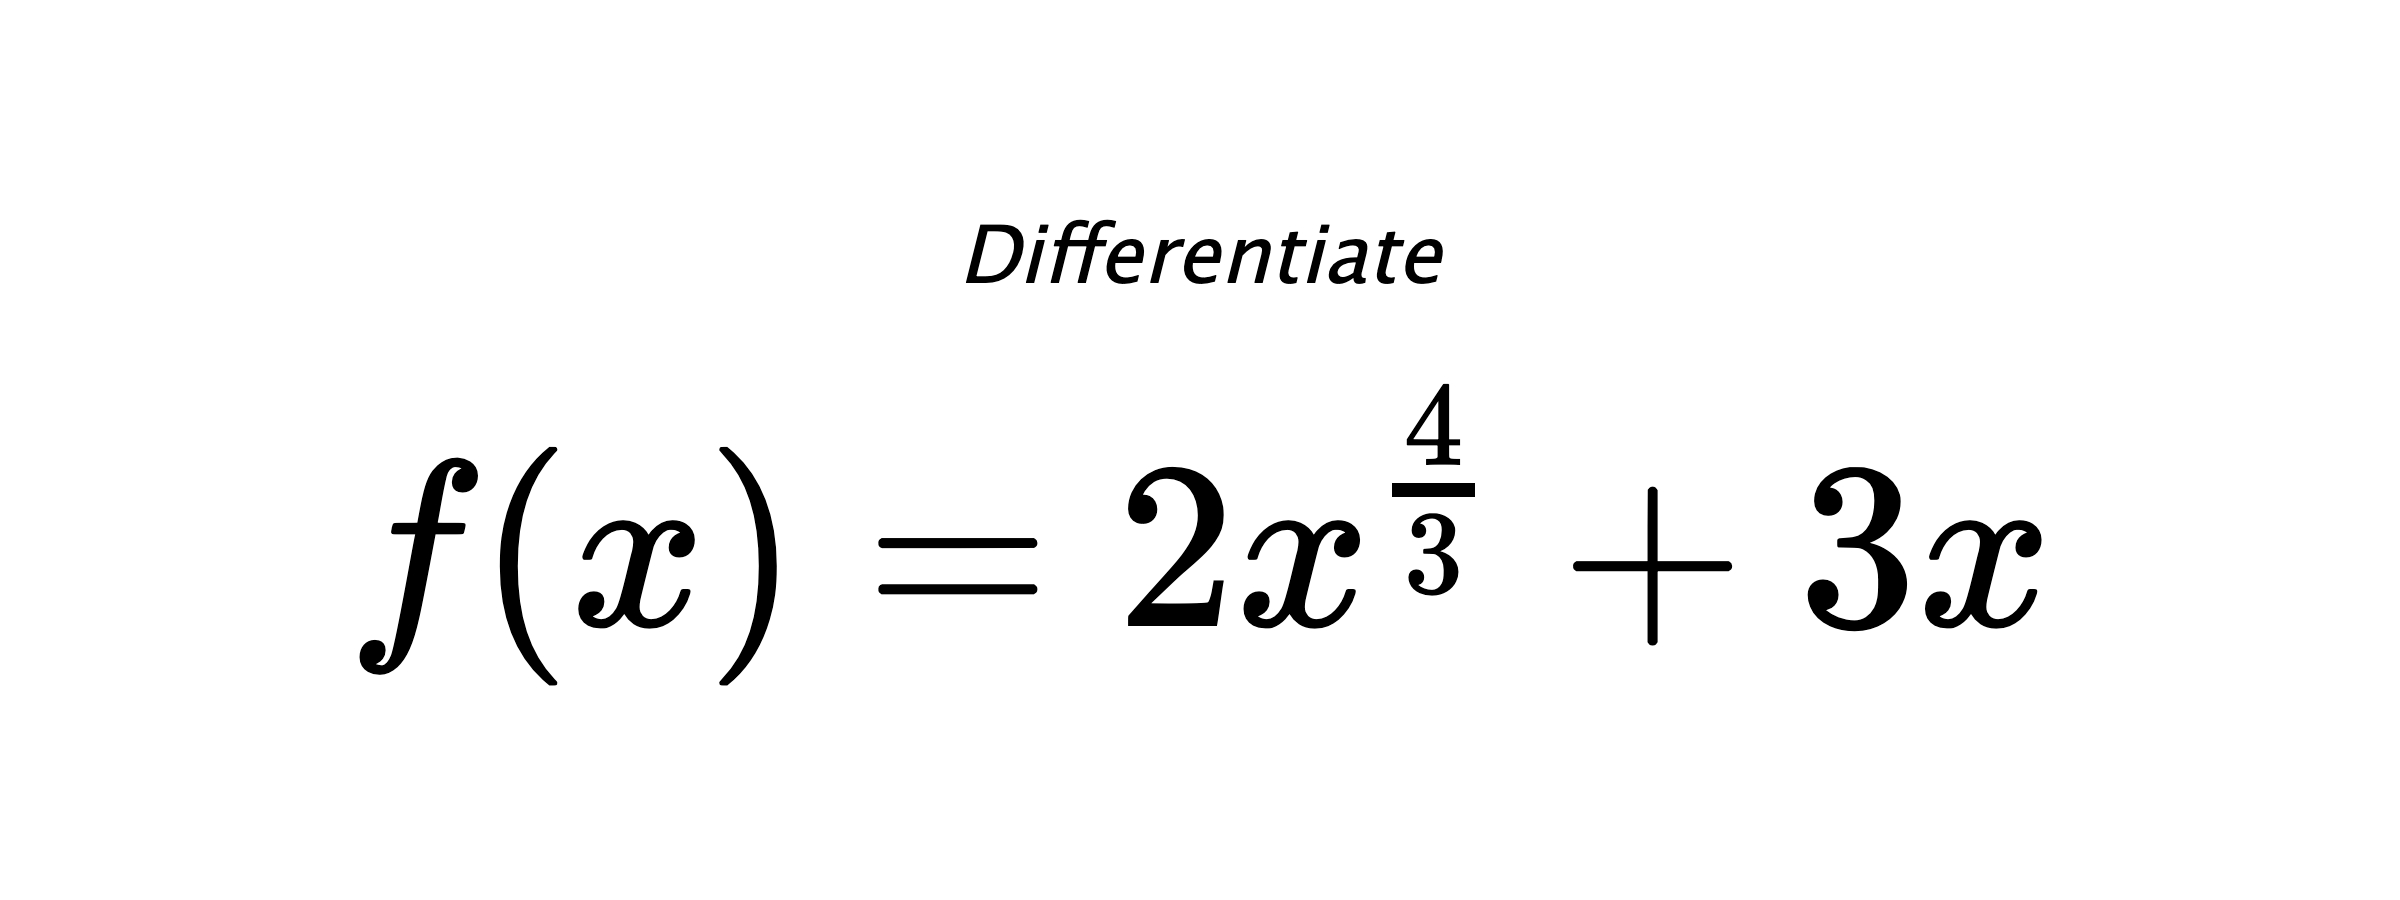 Differentiate $ f(x) = 2 x^{\frac{4}{3}} + 3 x $